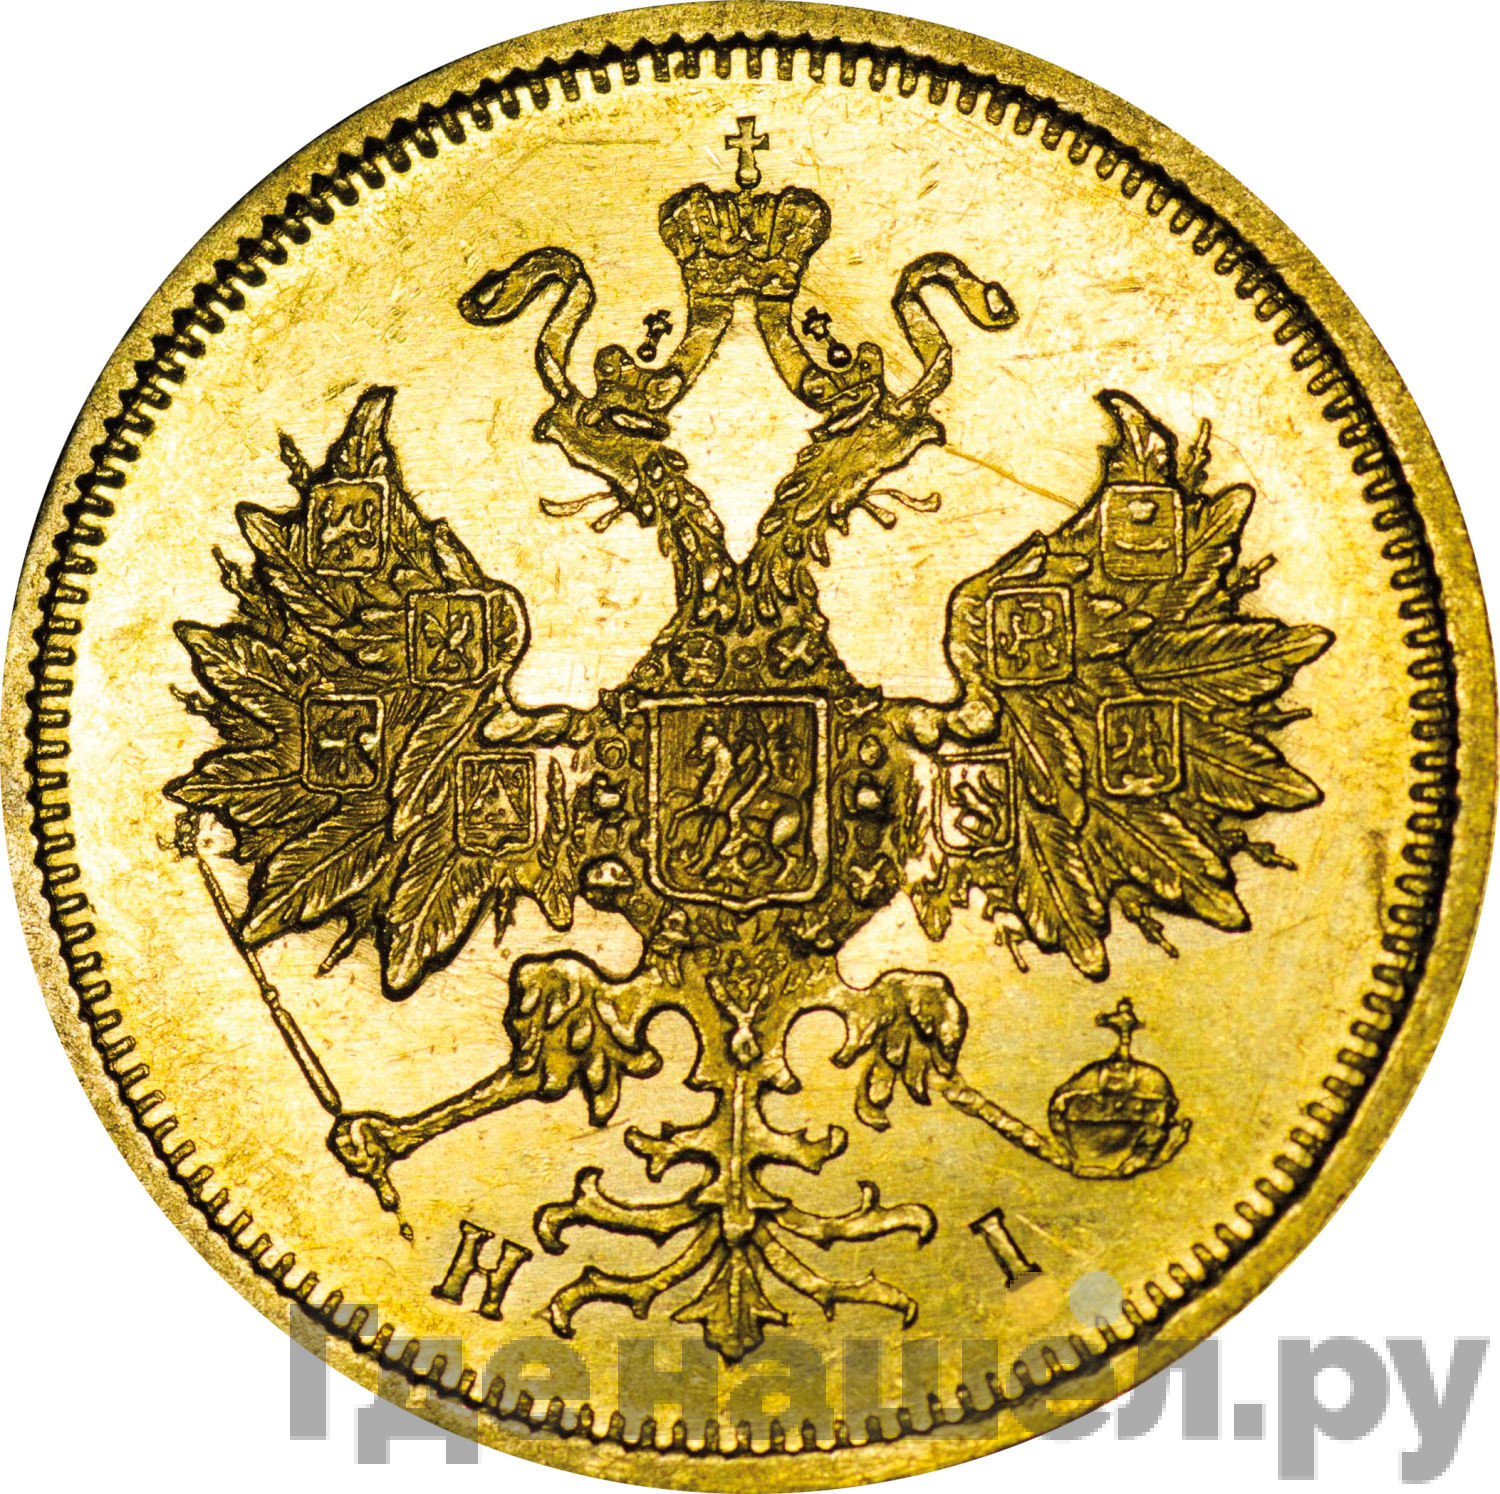 5 рублей 1877 года